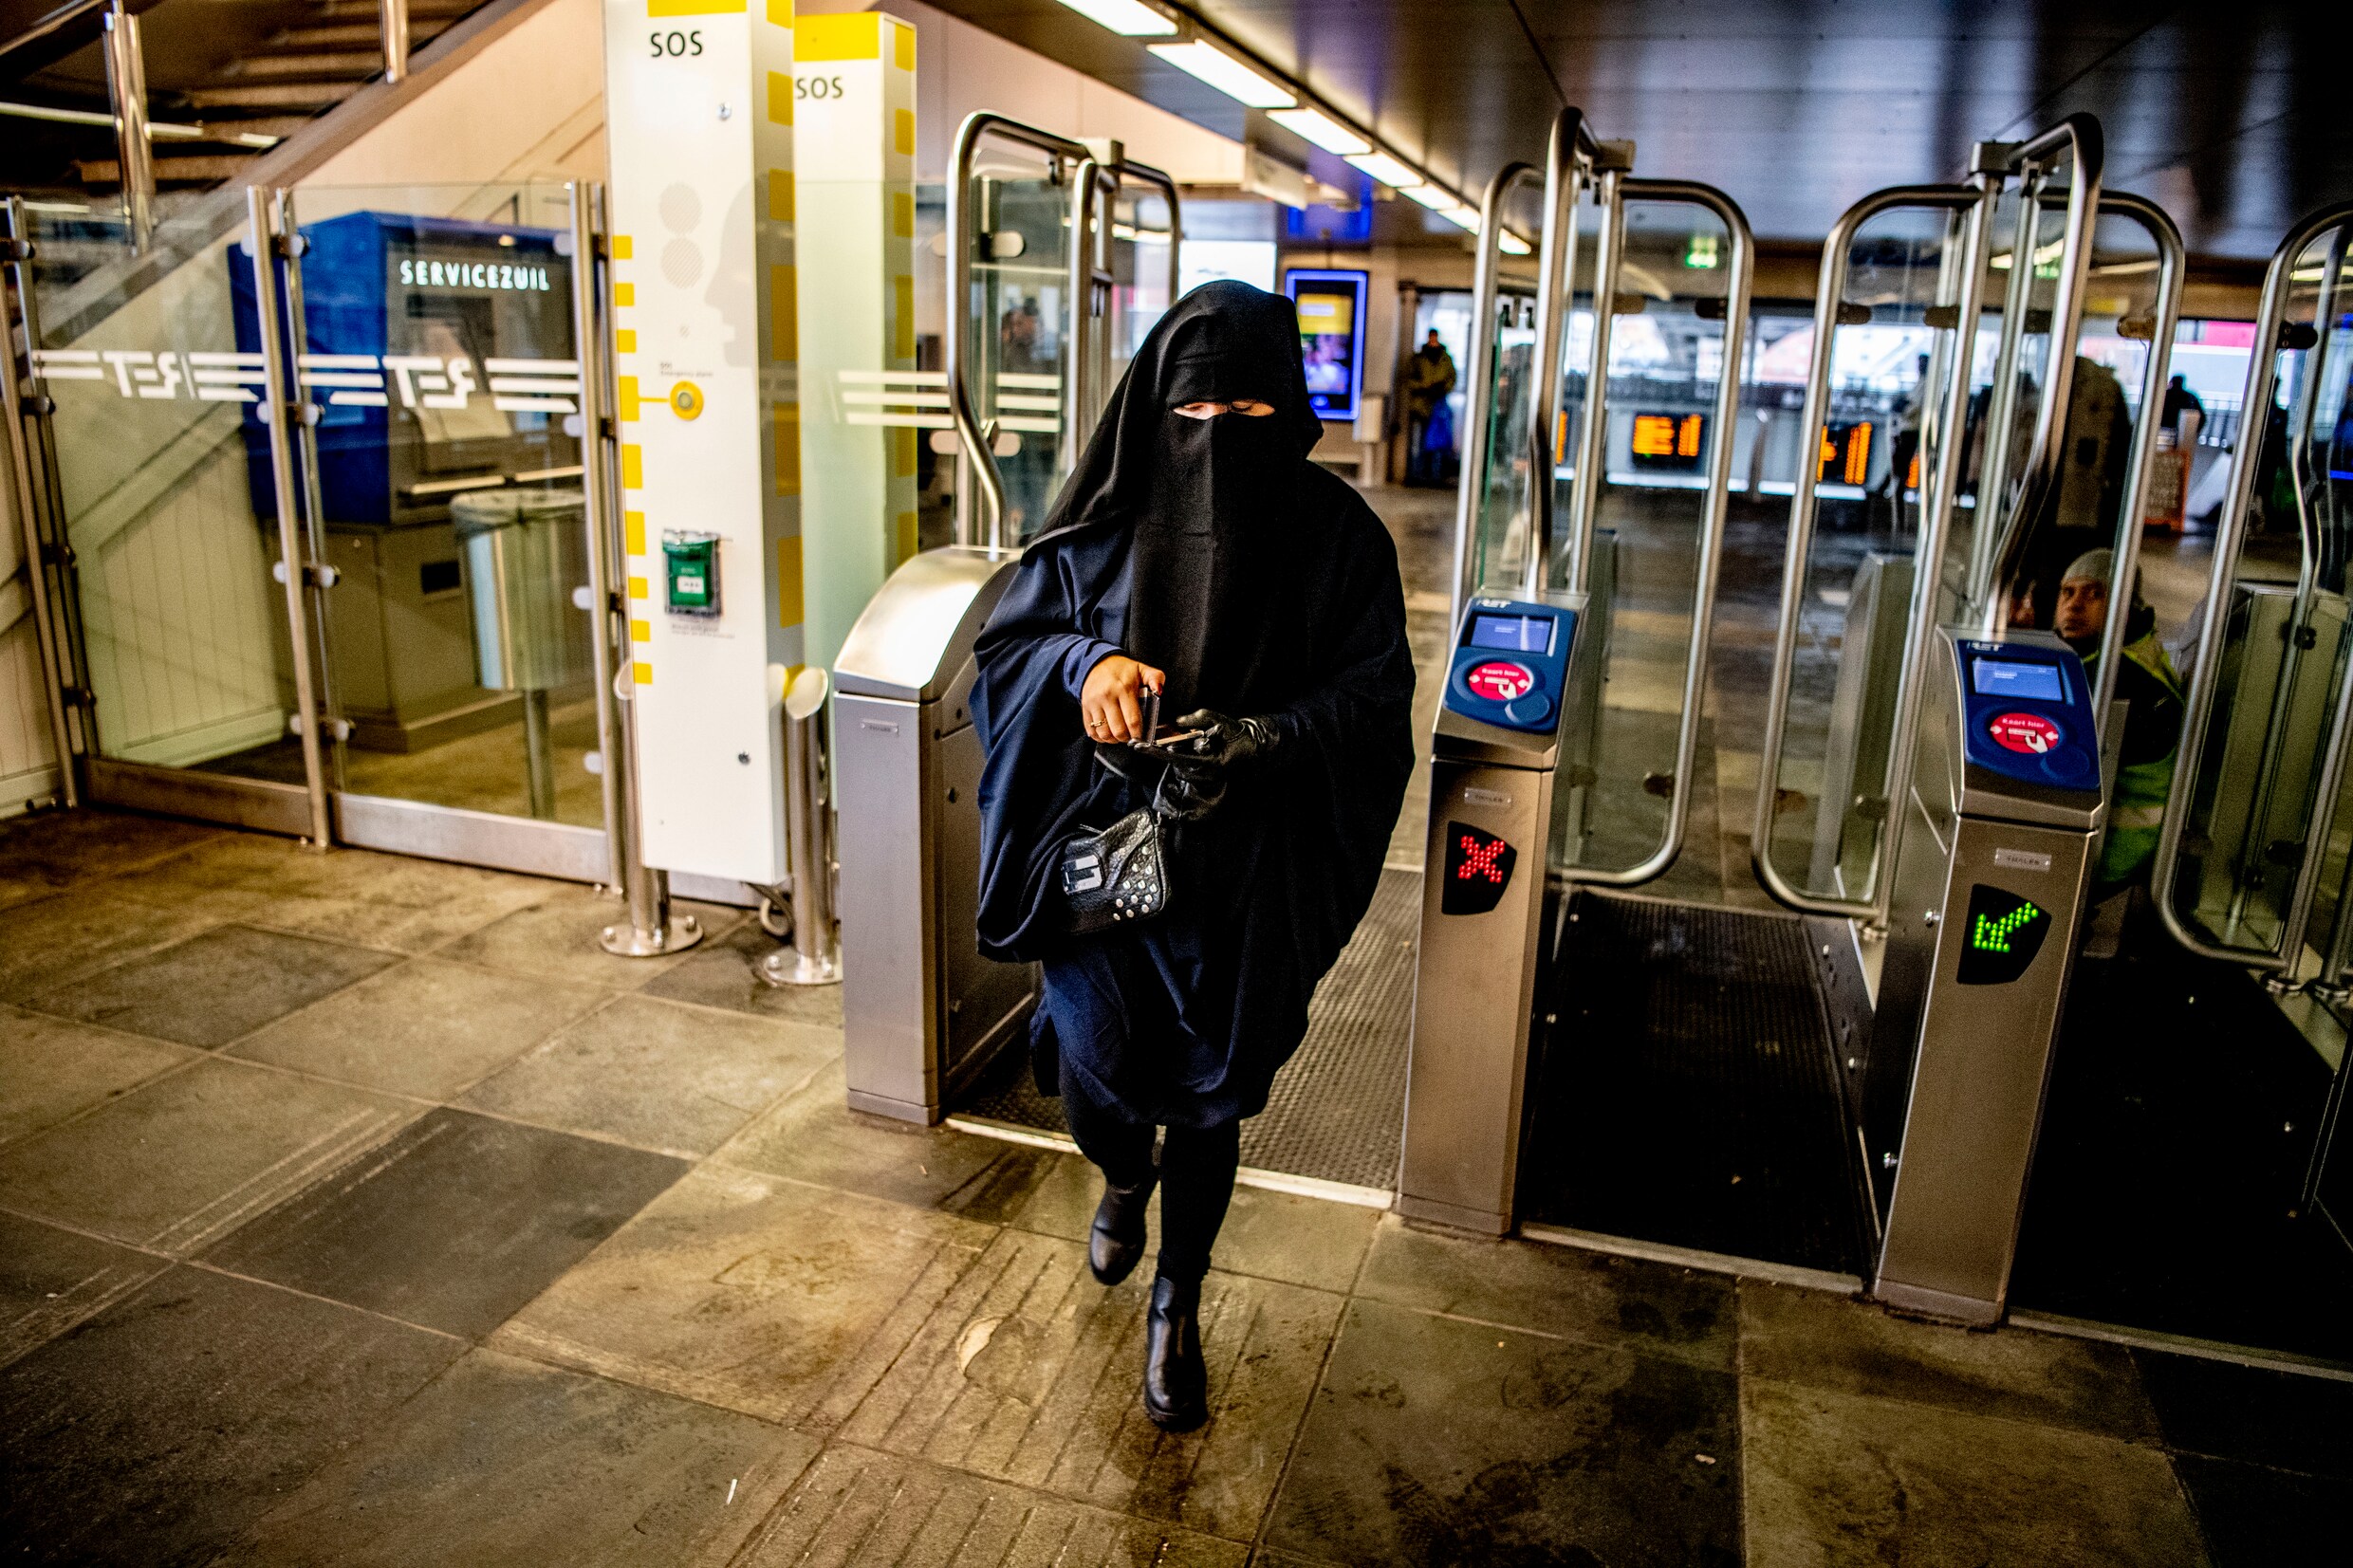 Hollandse salafist is geen gewelddadige extremist, maar gematigde poldermoslim